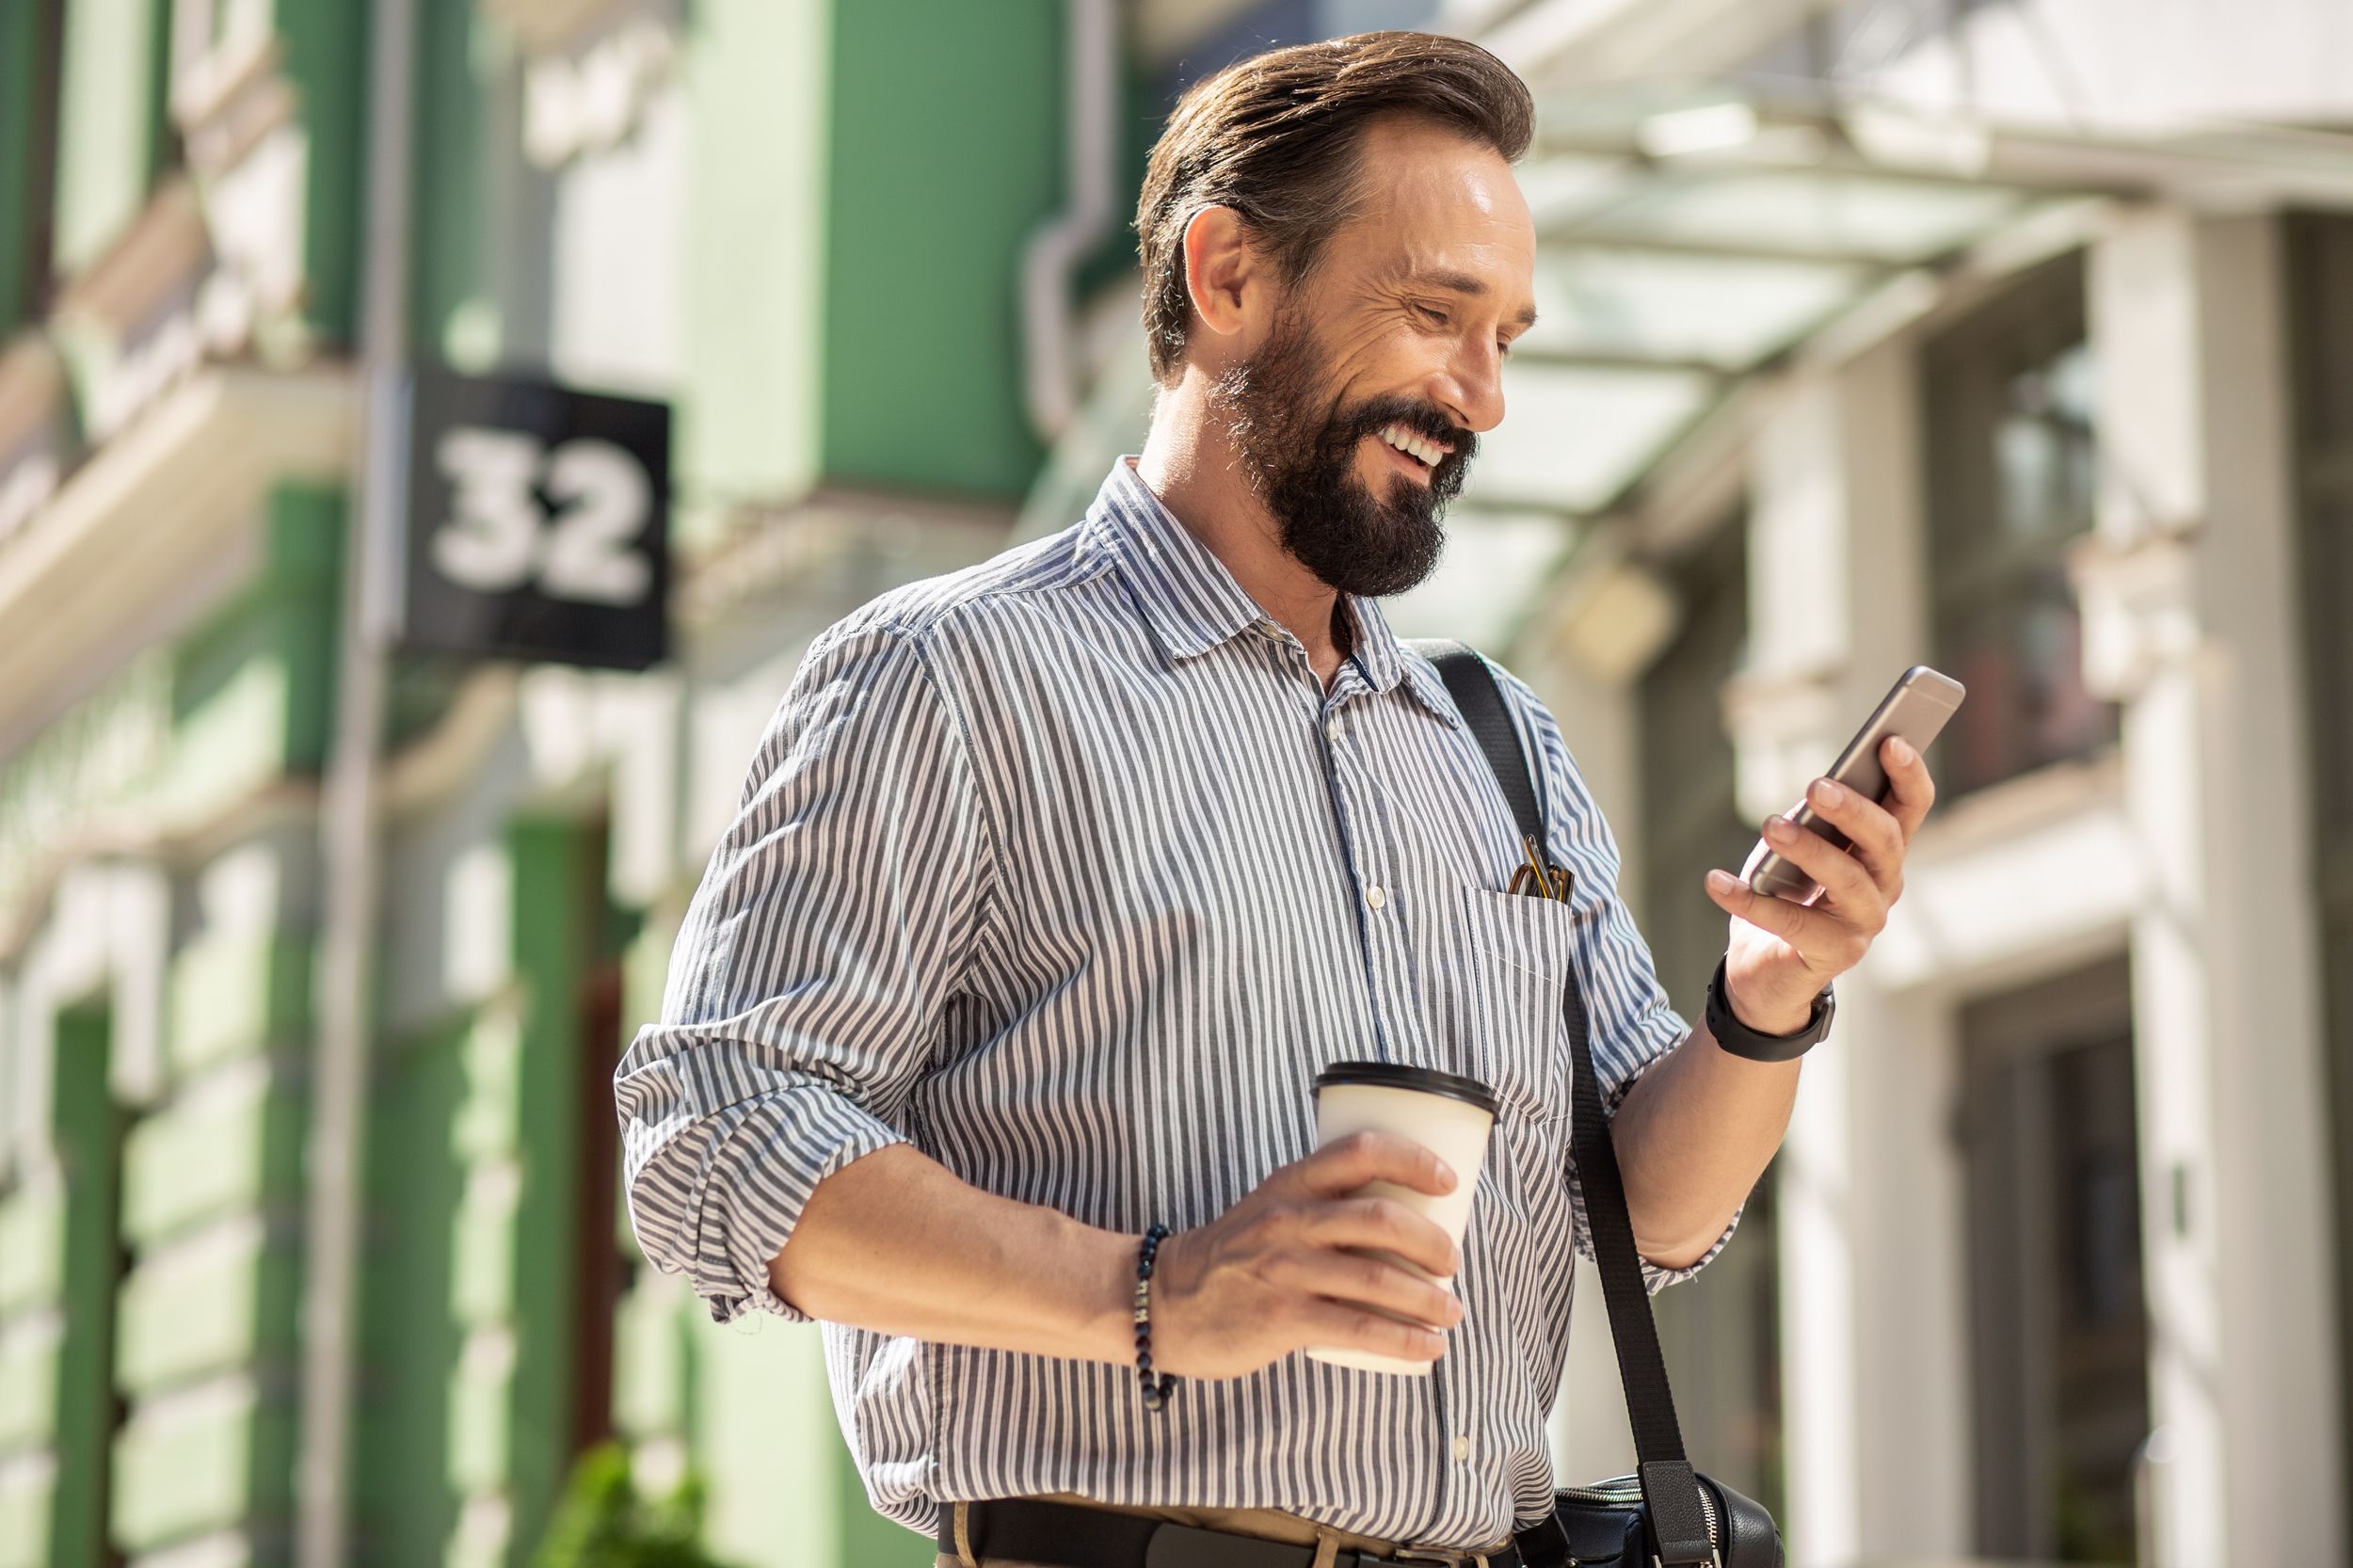 Man smiling at phone walking down street